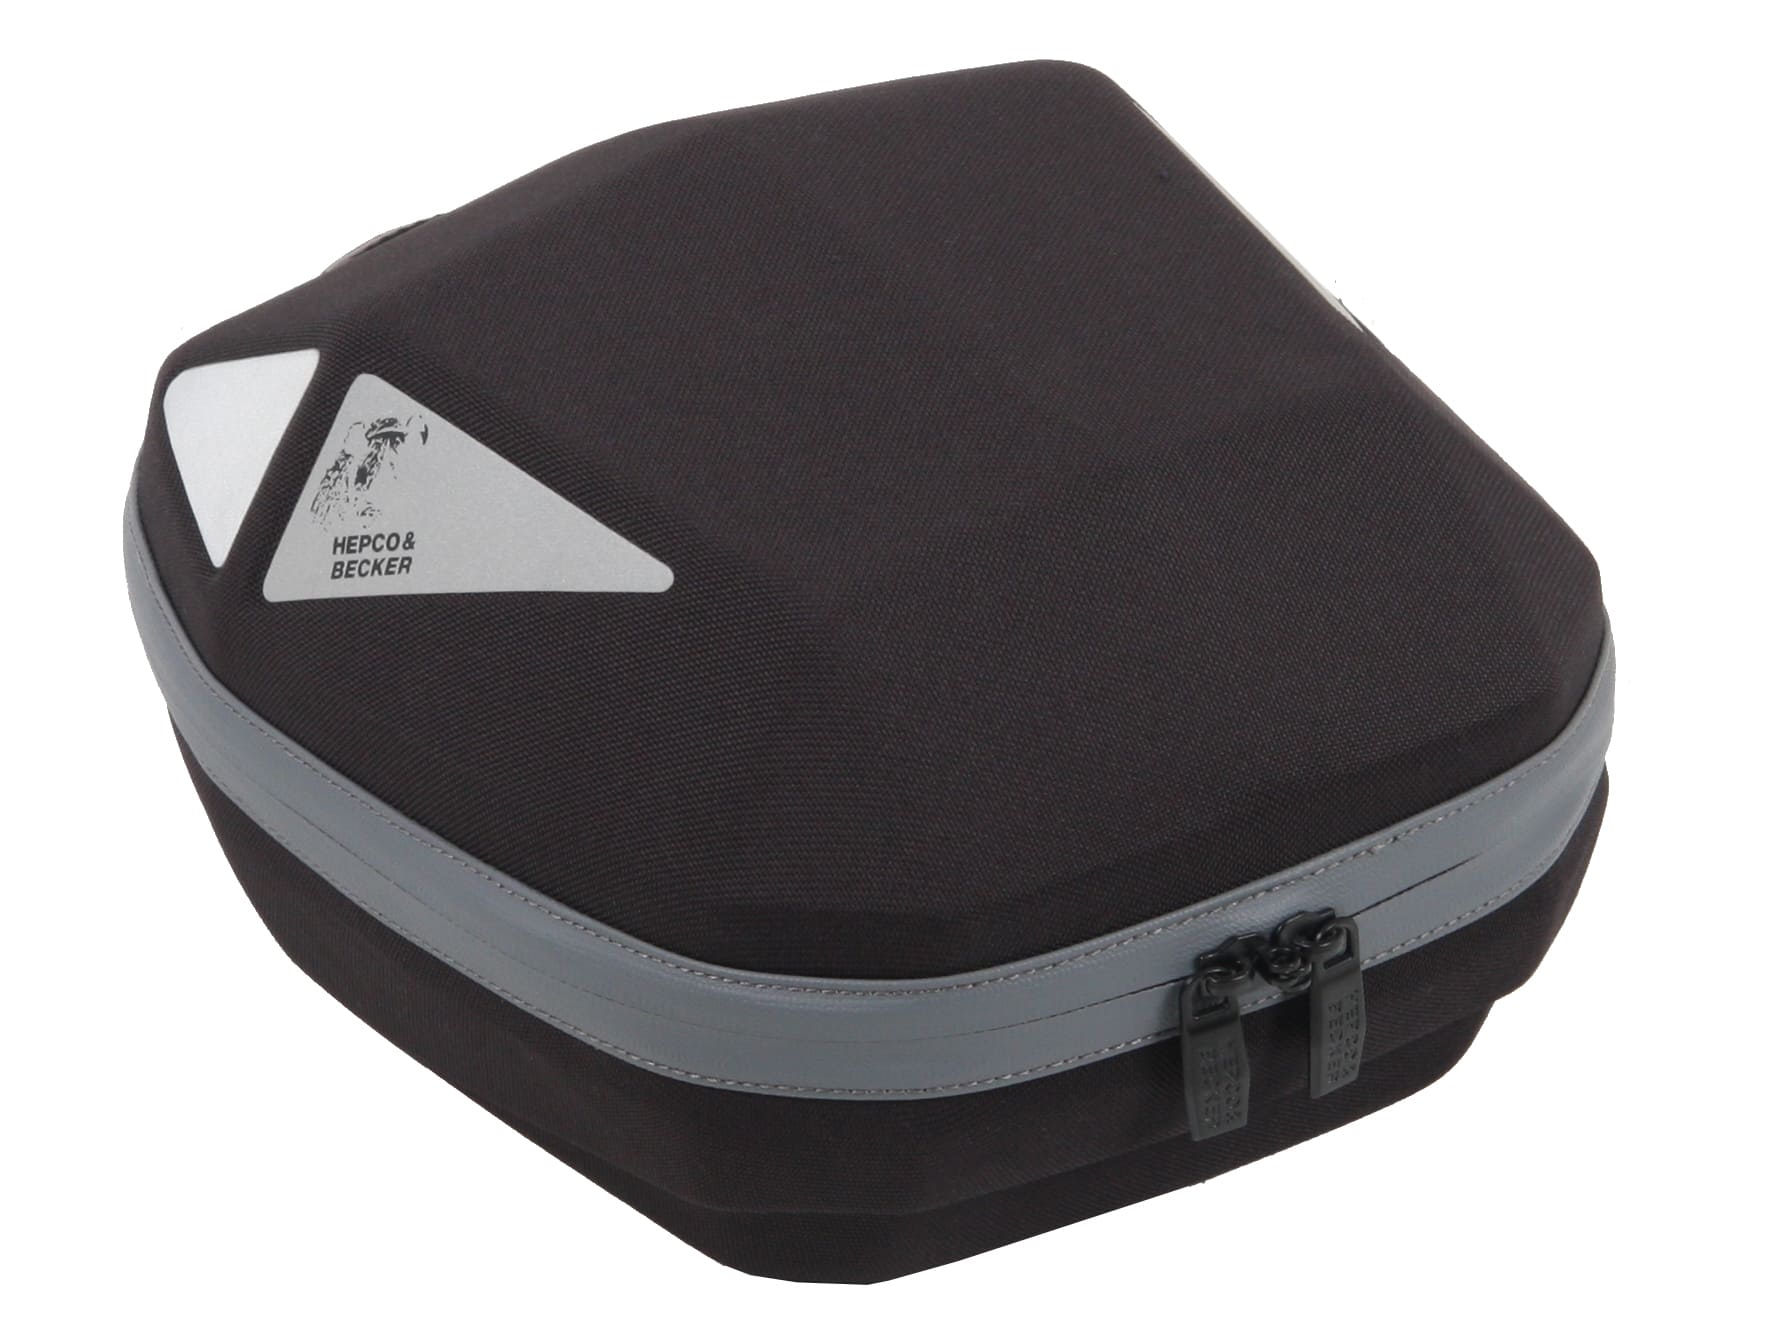 Tankbag Royster Daypack 5 ltr. black with grey zipper